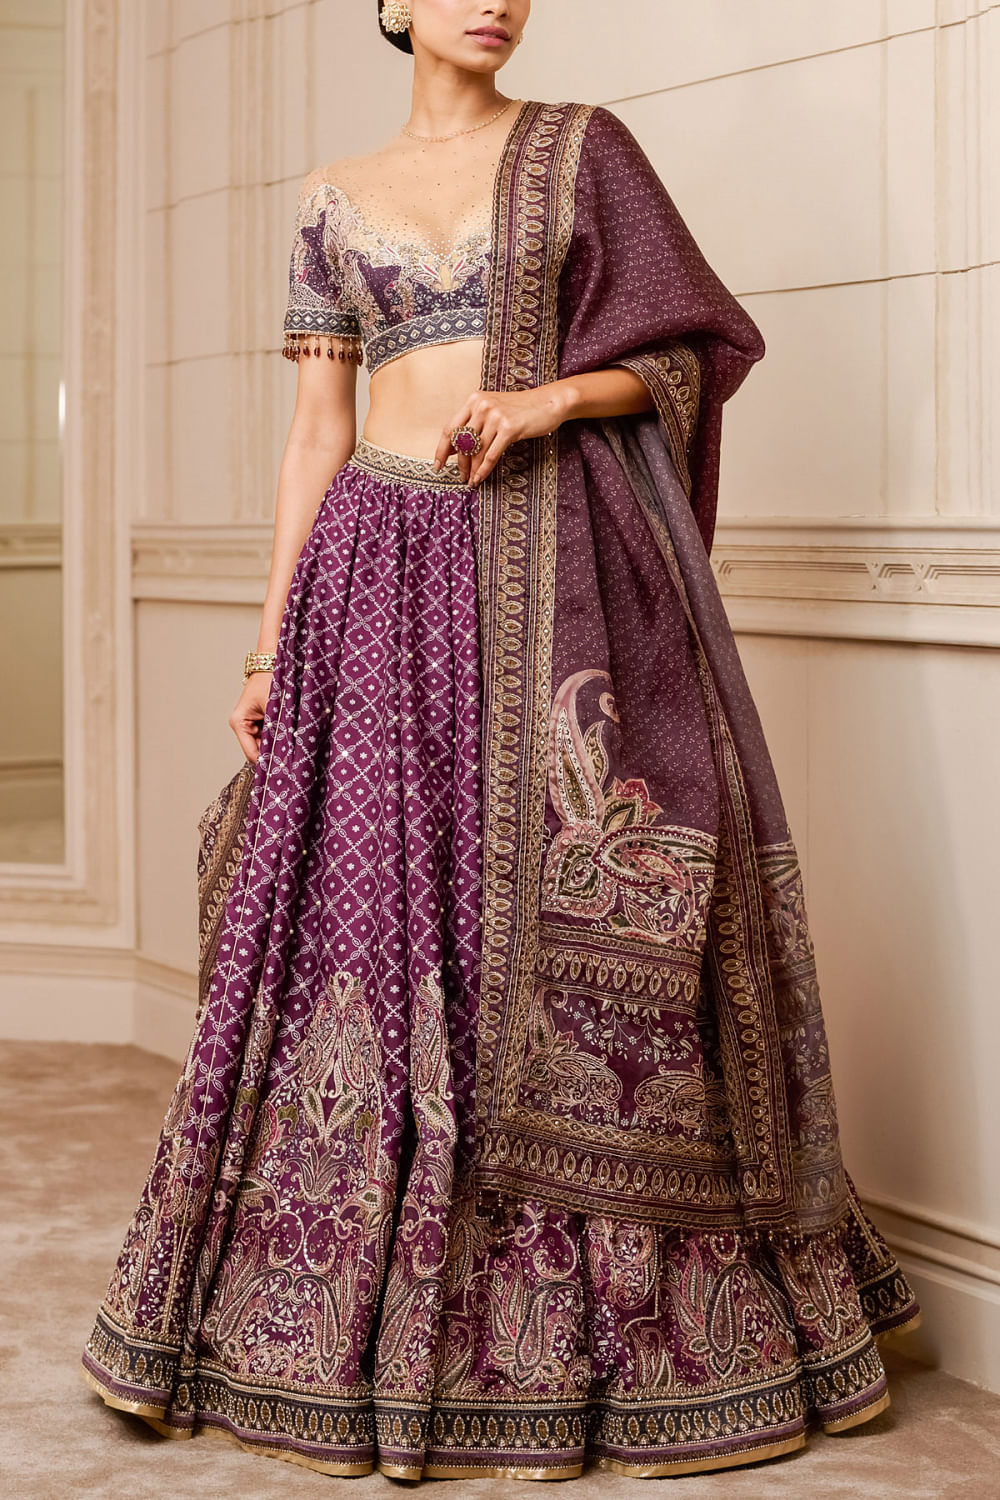 Brinjal Colour Soft Handloom Zari Weaving Silk Saree at Rs 2630.00 |  हैंडलूम रेशम साड़ी - Bhakti Silk Mills, Surat | ID: 2850511240991